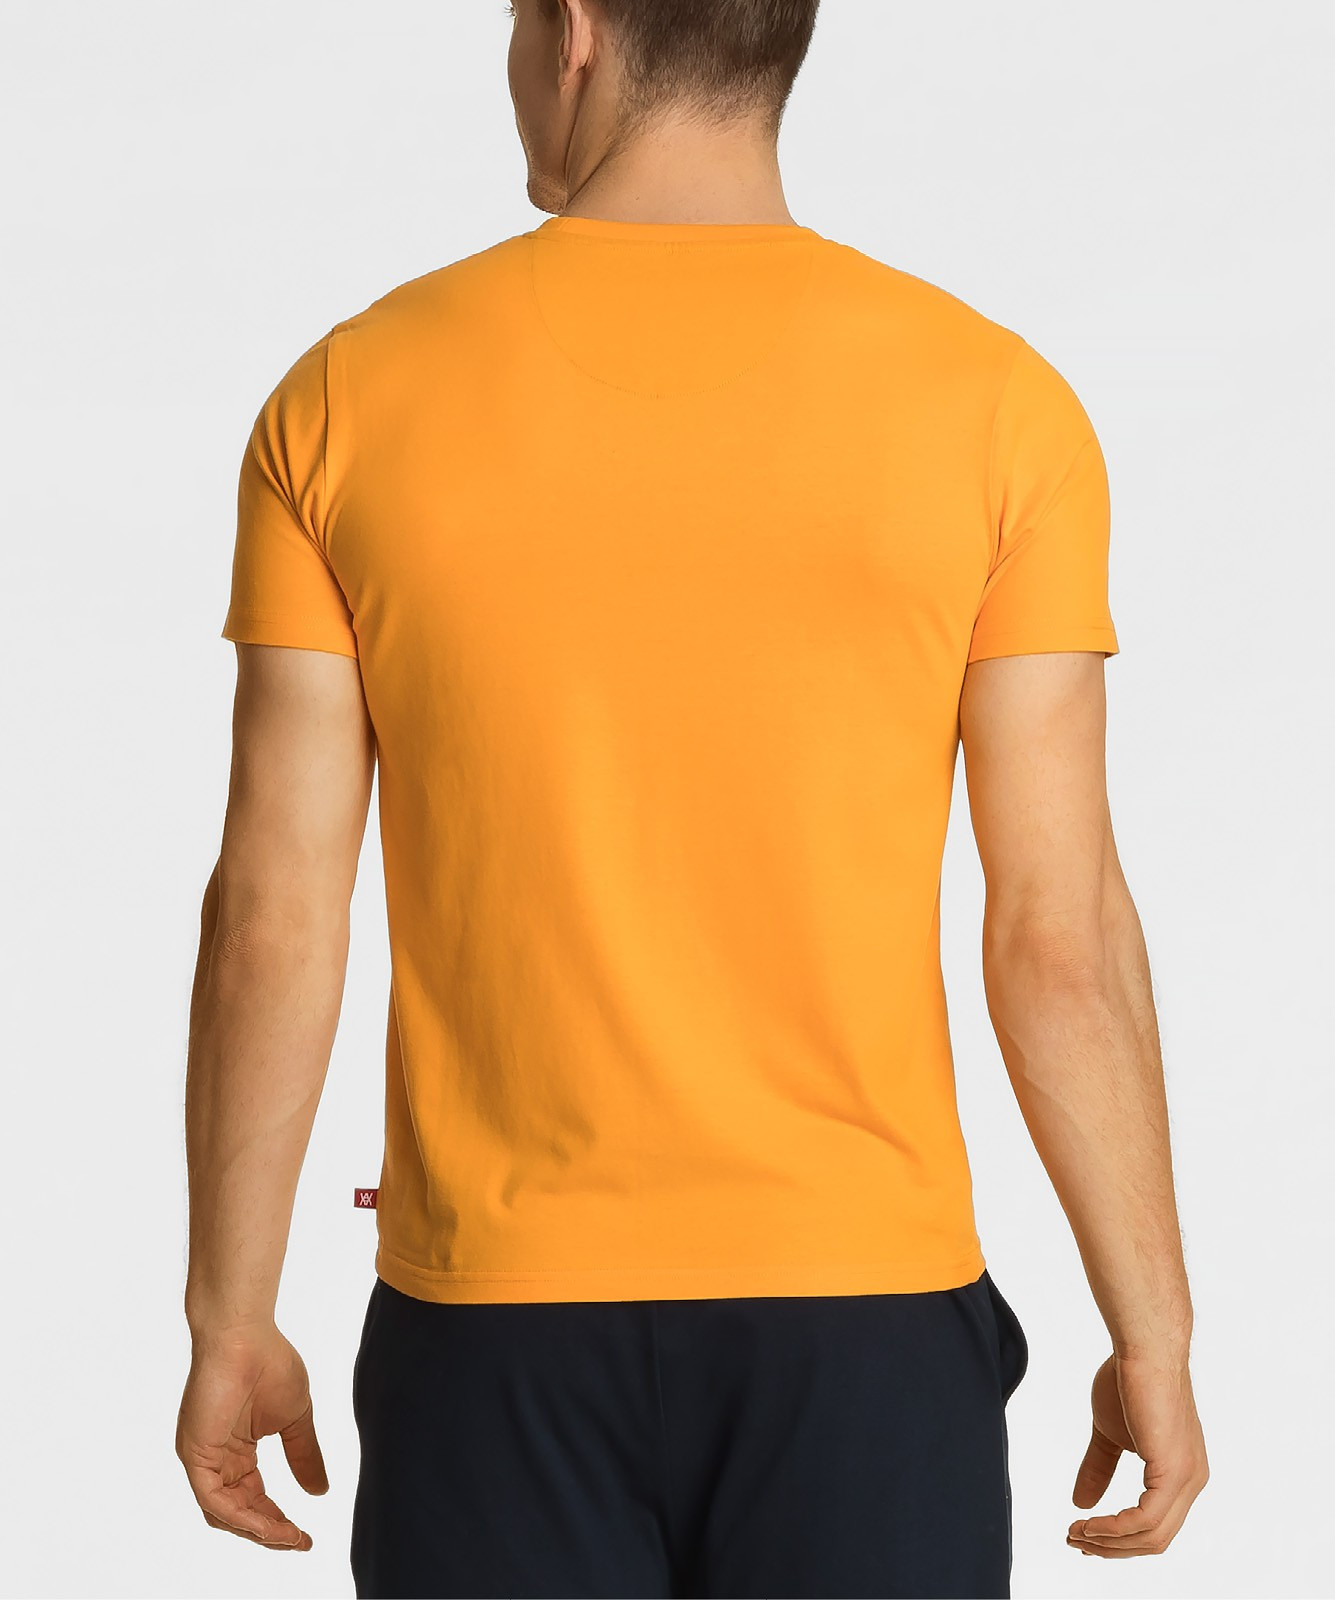 Pánské tričko Atlantic NMT-034 S-2XL jasně oranžová S